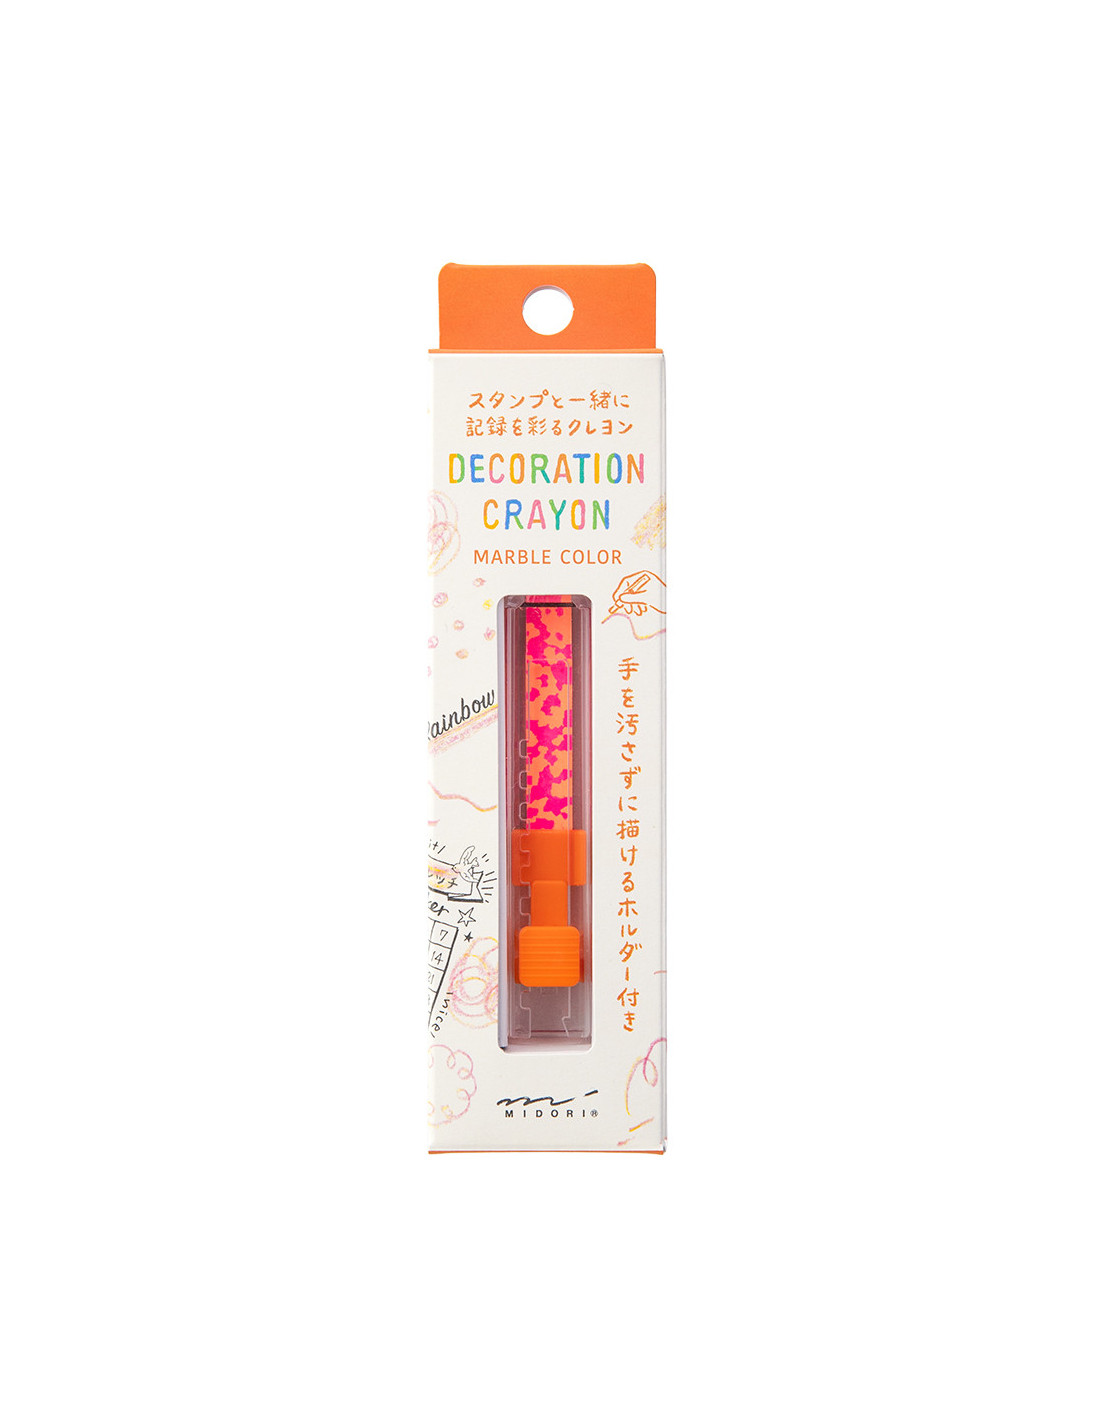 Midori Decoration Crayon - Marble Color - Pink & Orange